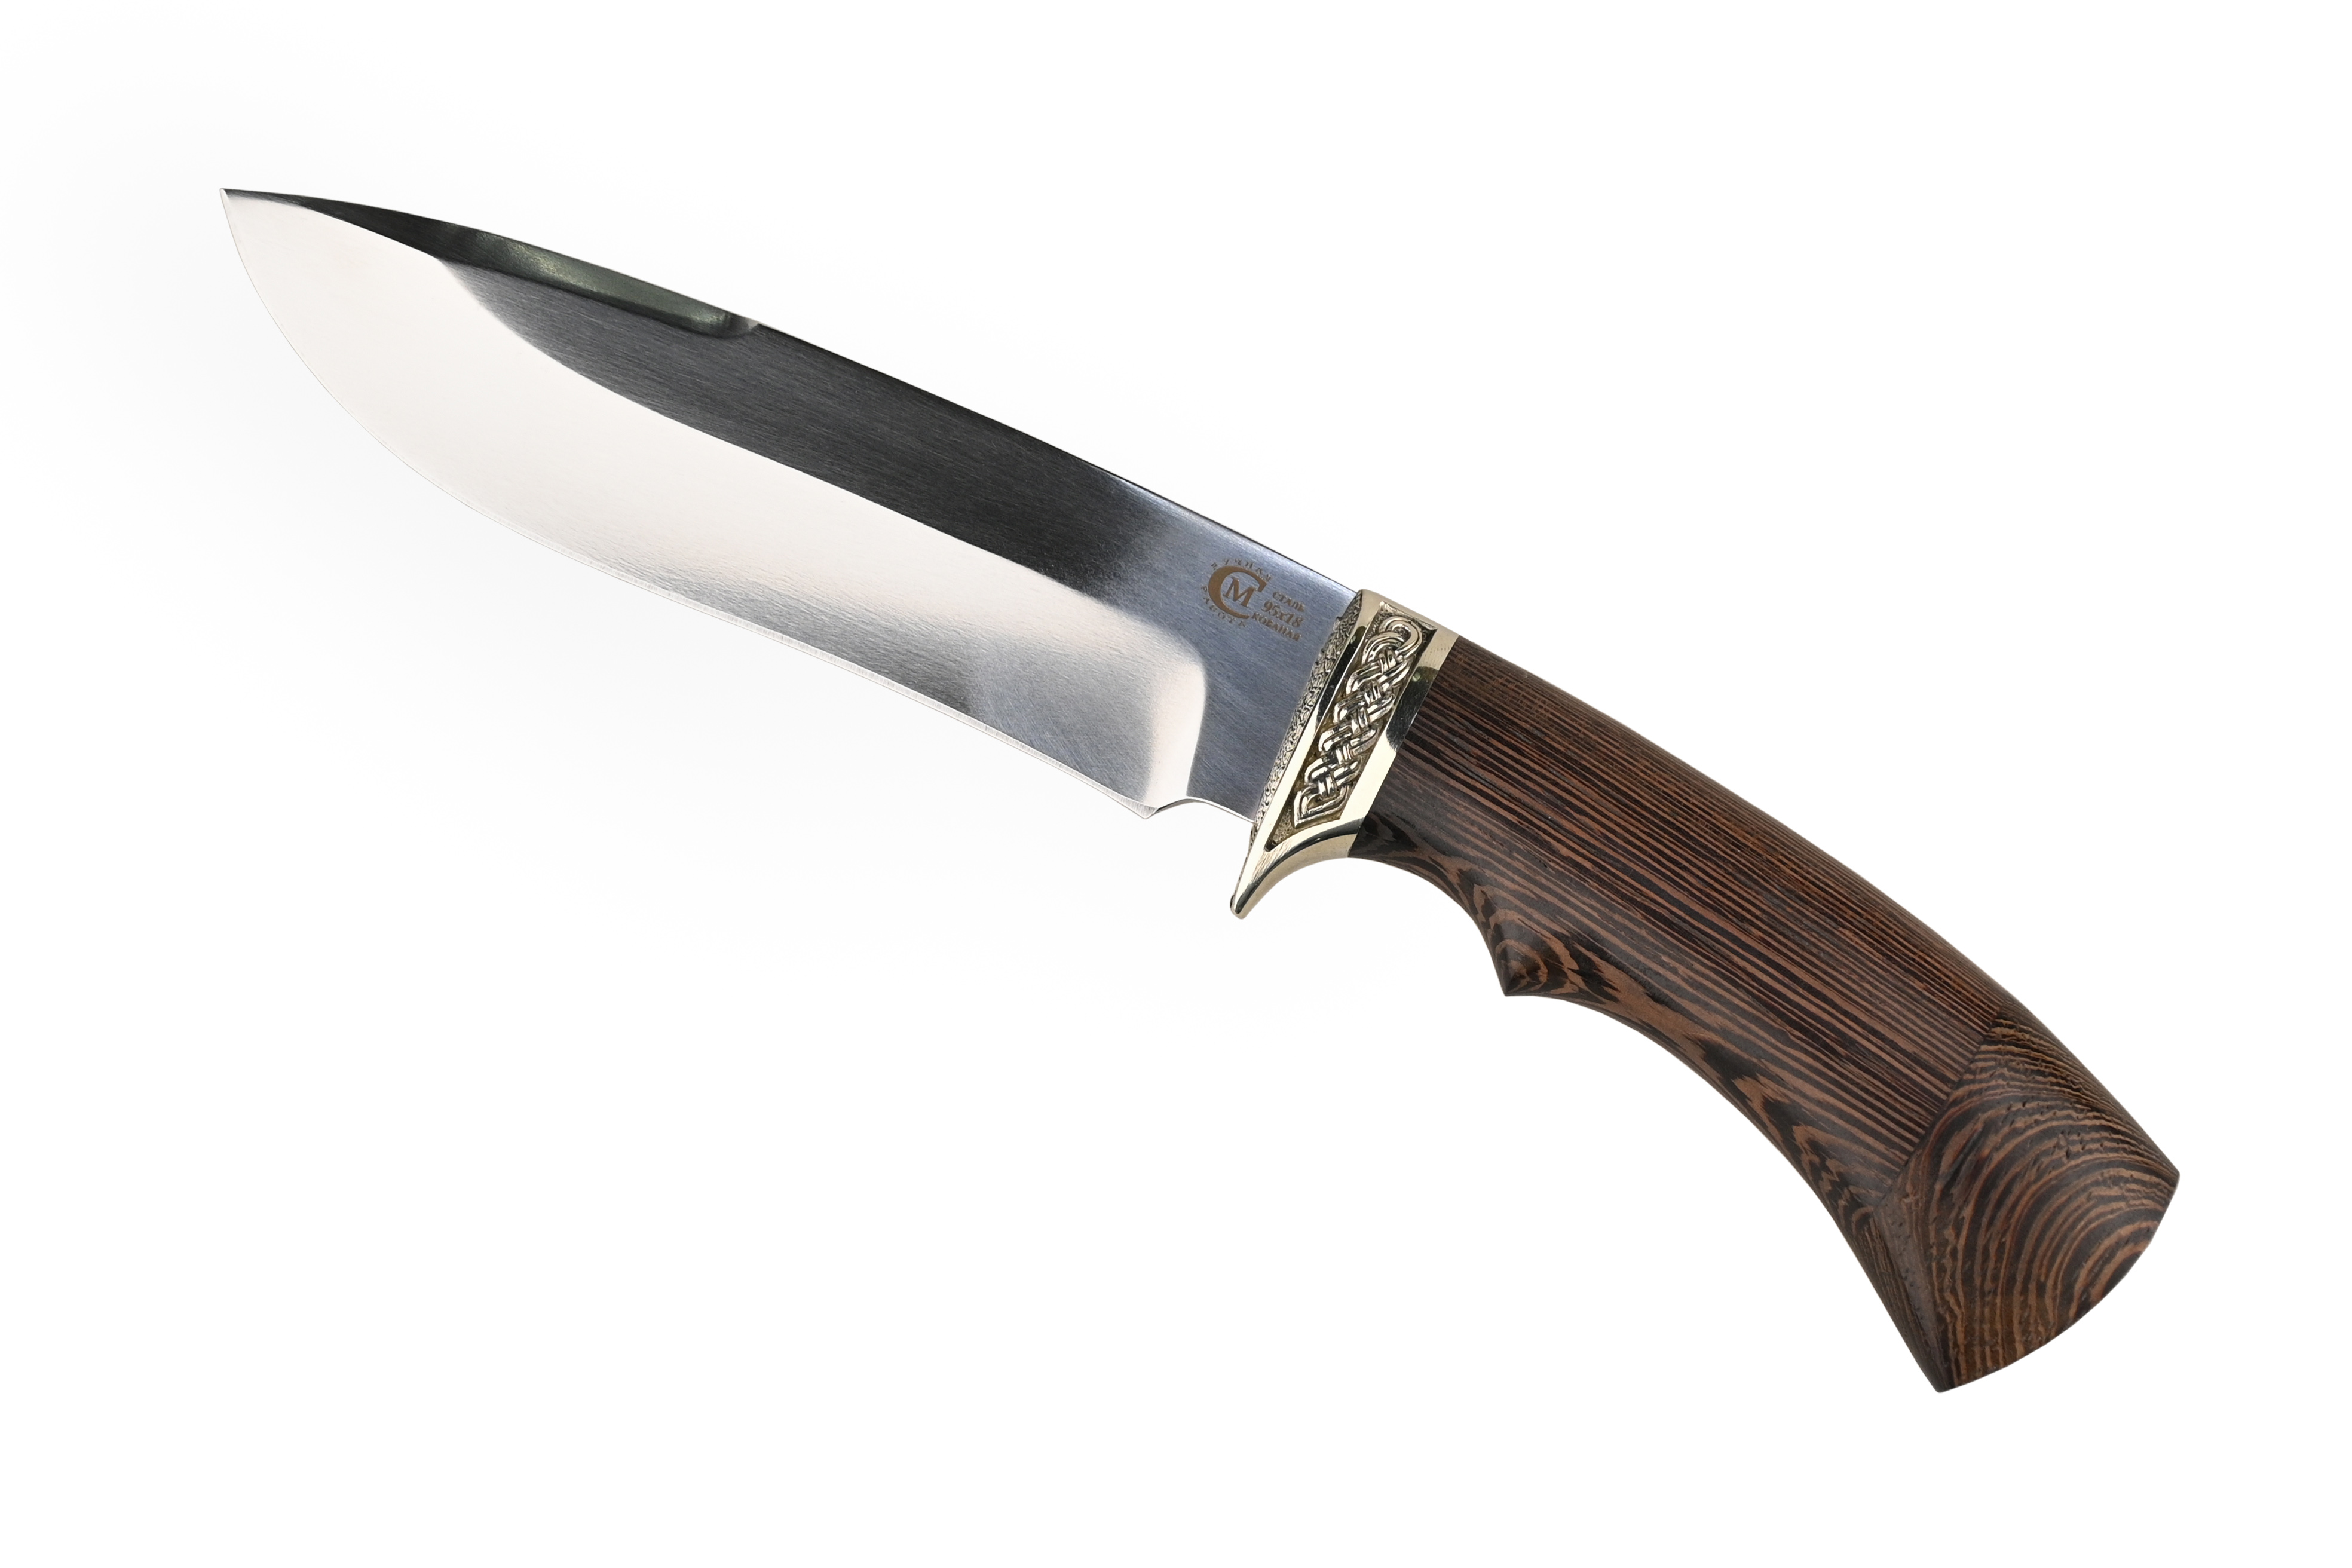 Нож ИП Семин Скиф кованая сталь 95x18 венге литье - фото 1